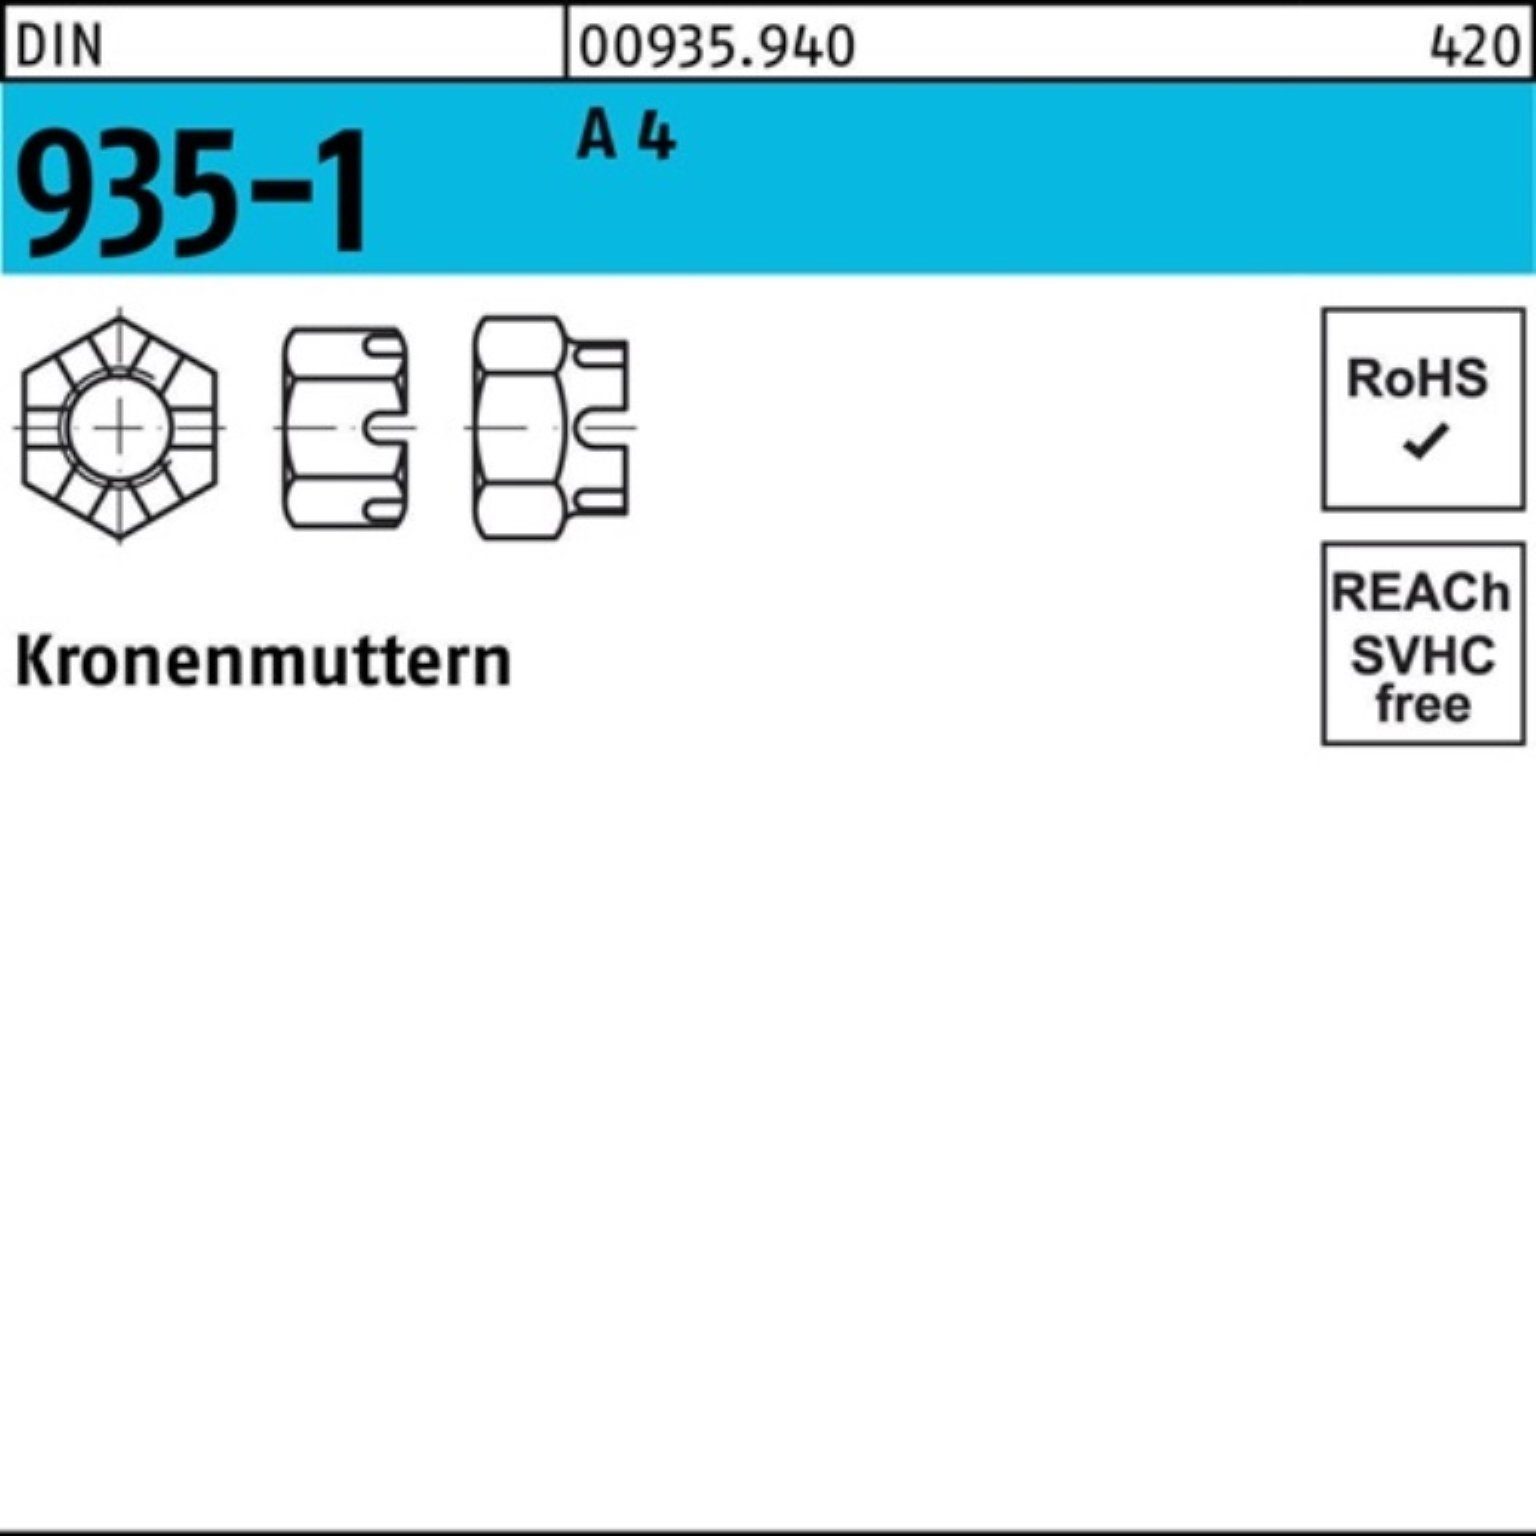 Reyher Kronenmutter 100er Pack Kronenmutter DIN 935-1 M8 A 4 25 Stück DIN 935-1 A 4 Krone | Muttern